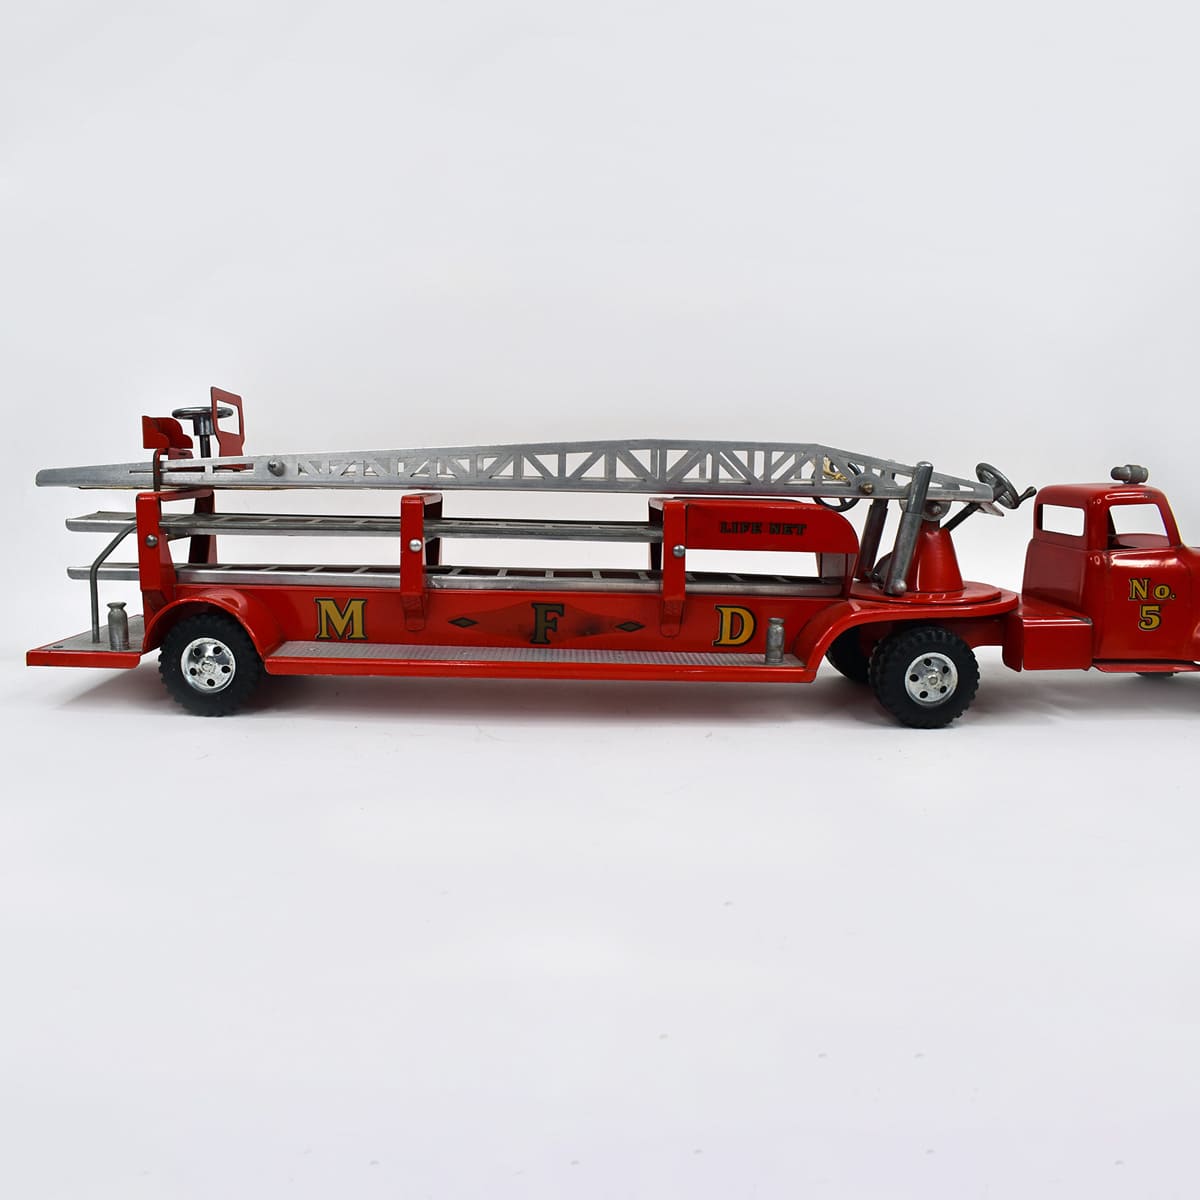 1954 Tonka MFD Arial Ladder Fire Truck No 5